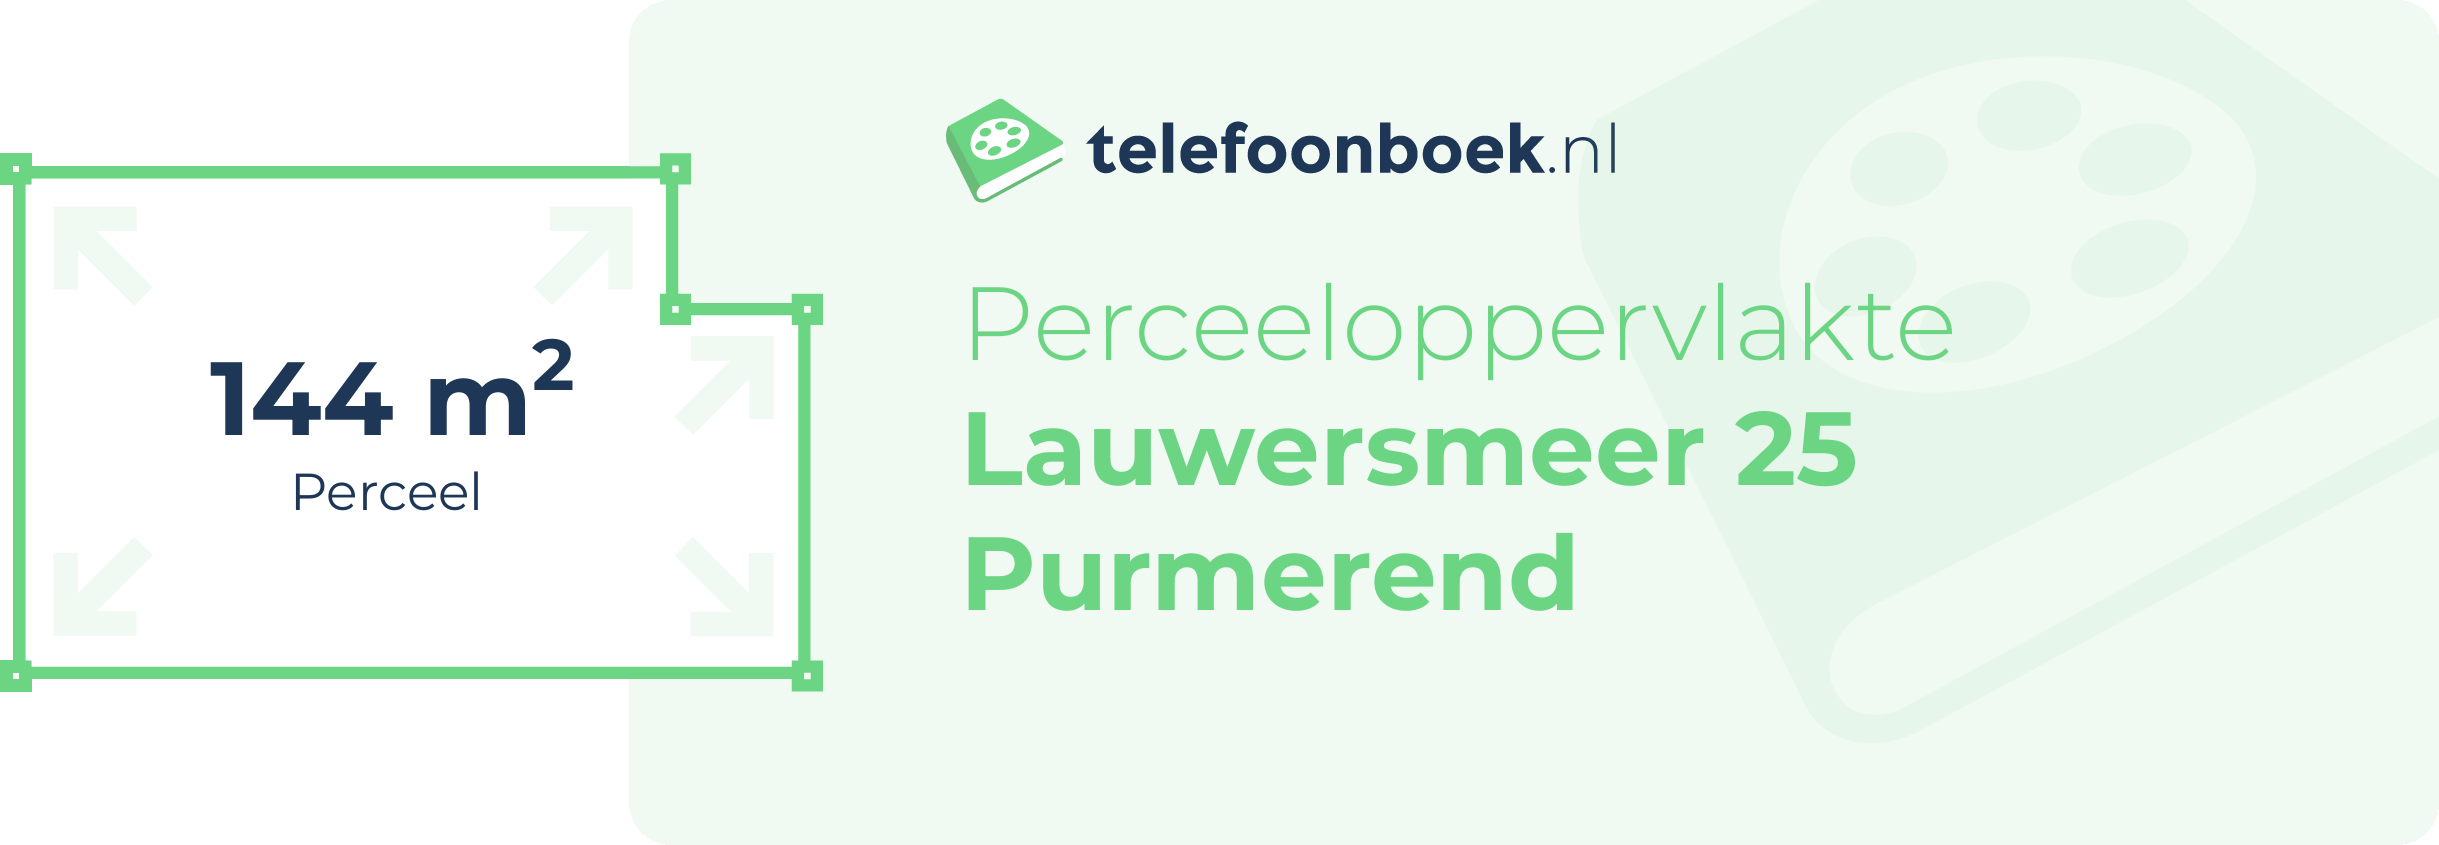 Perceeloppervlakte Lauwersmeer 25 Purmerend